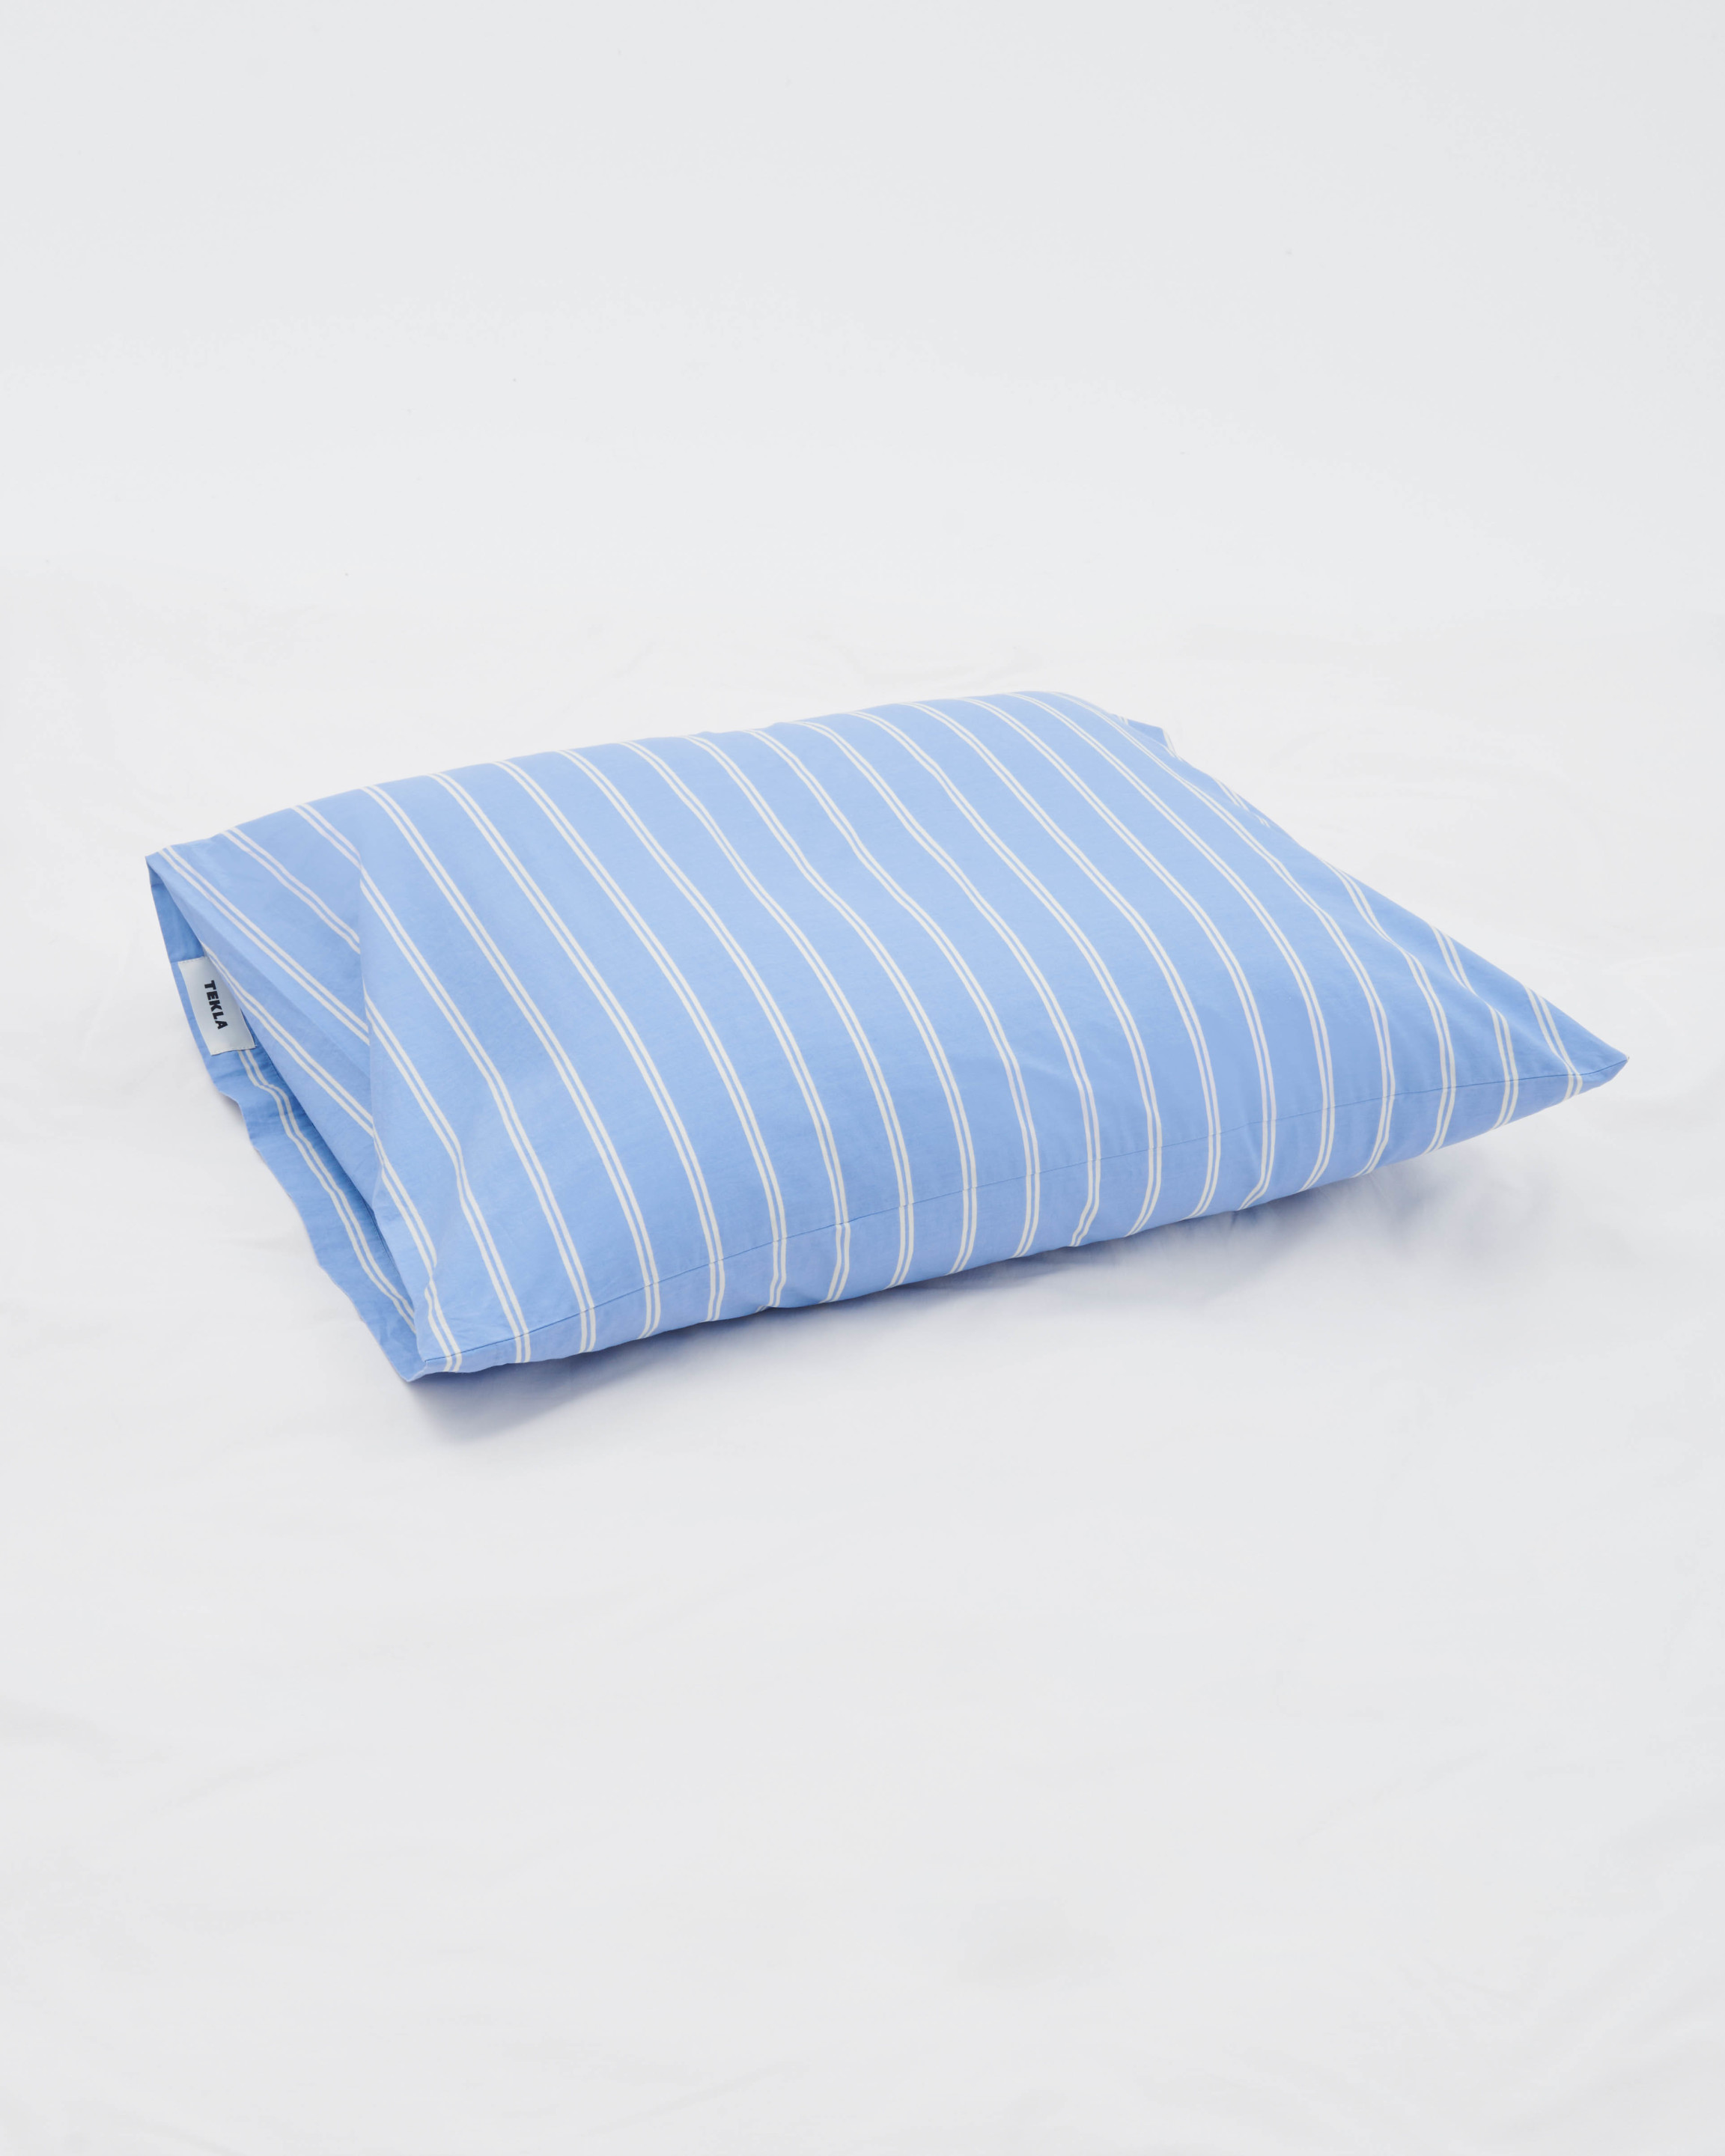 Percale Pillow Sham - Island Blue Stripes